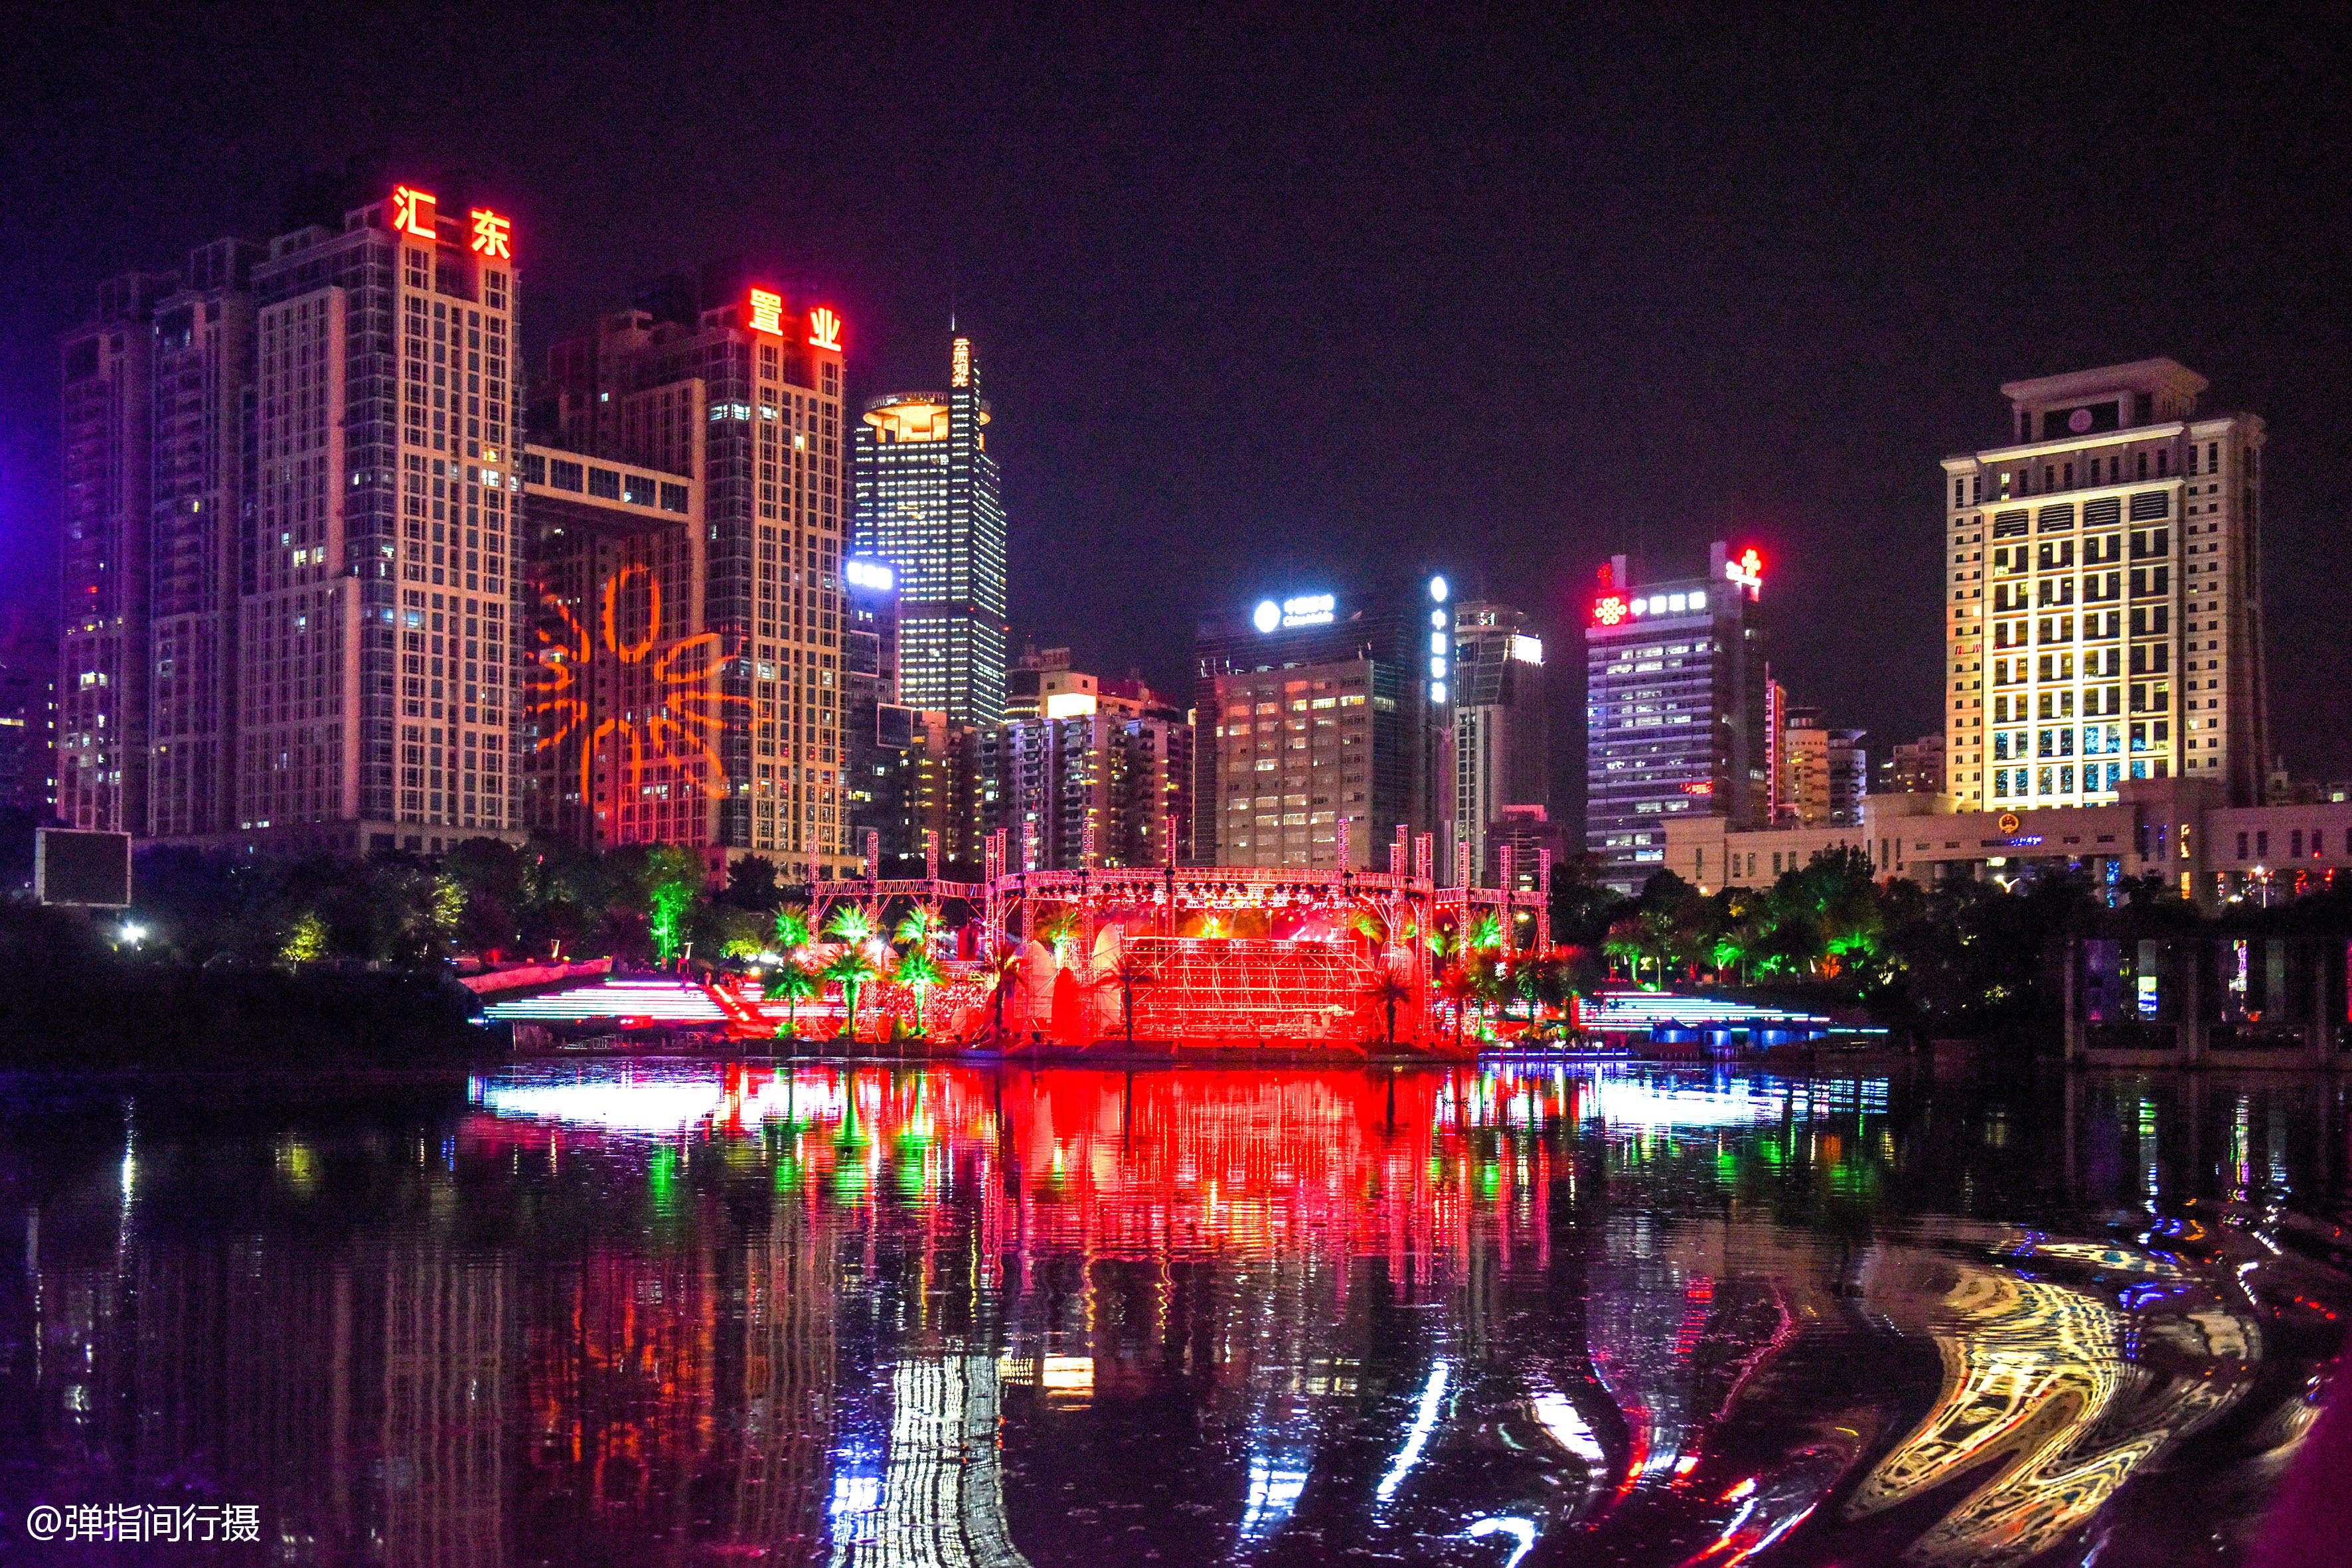 广西南宁发展速度惊人,夜景堪比一线城市,光旅游收入就超1000亿